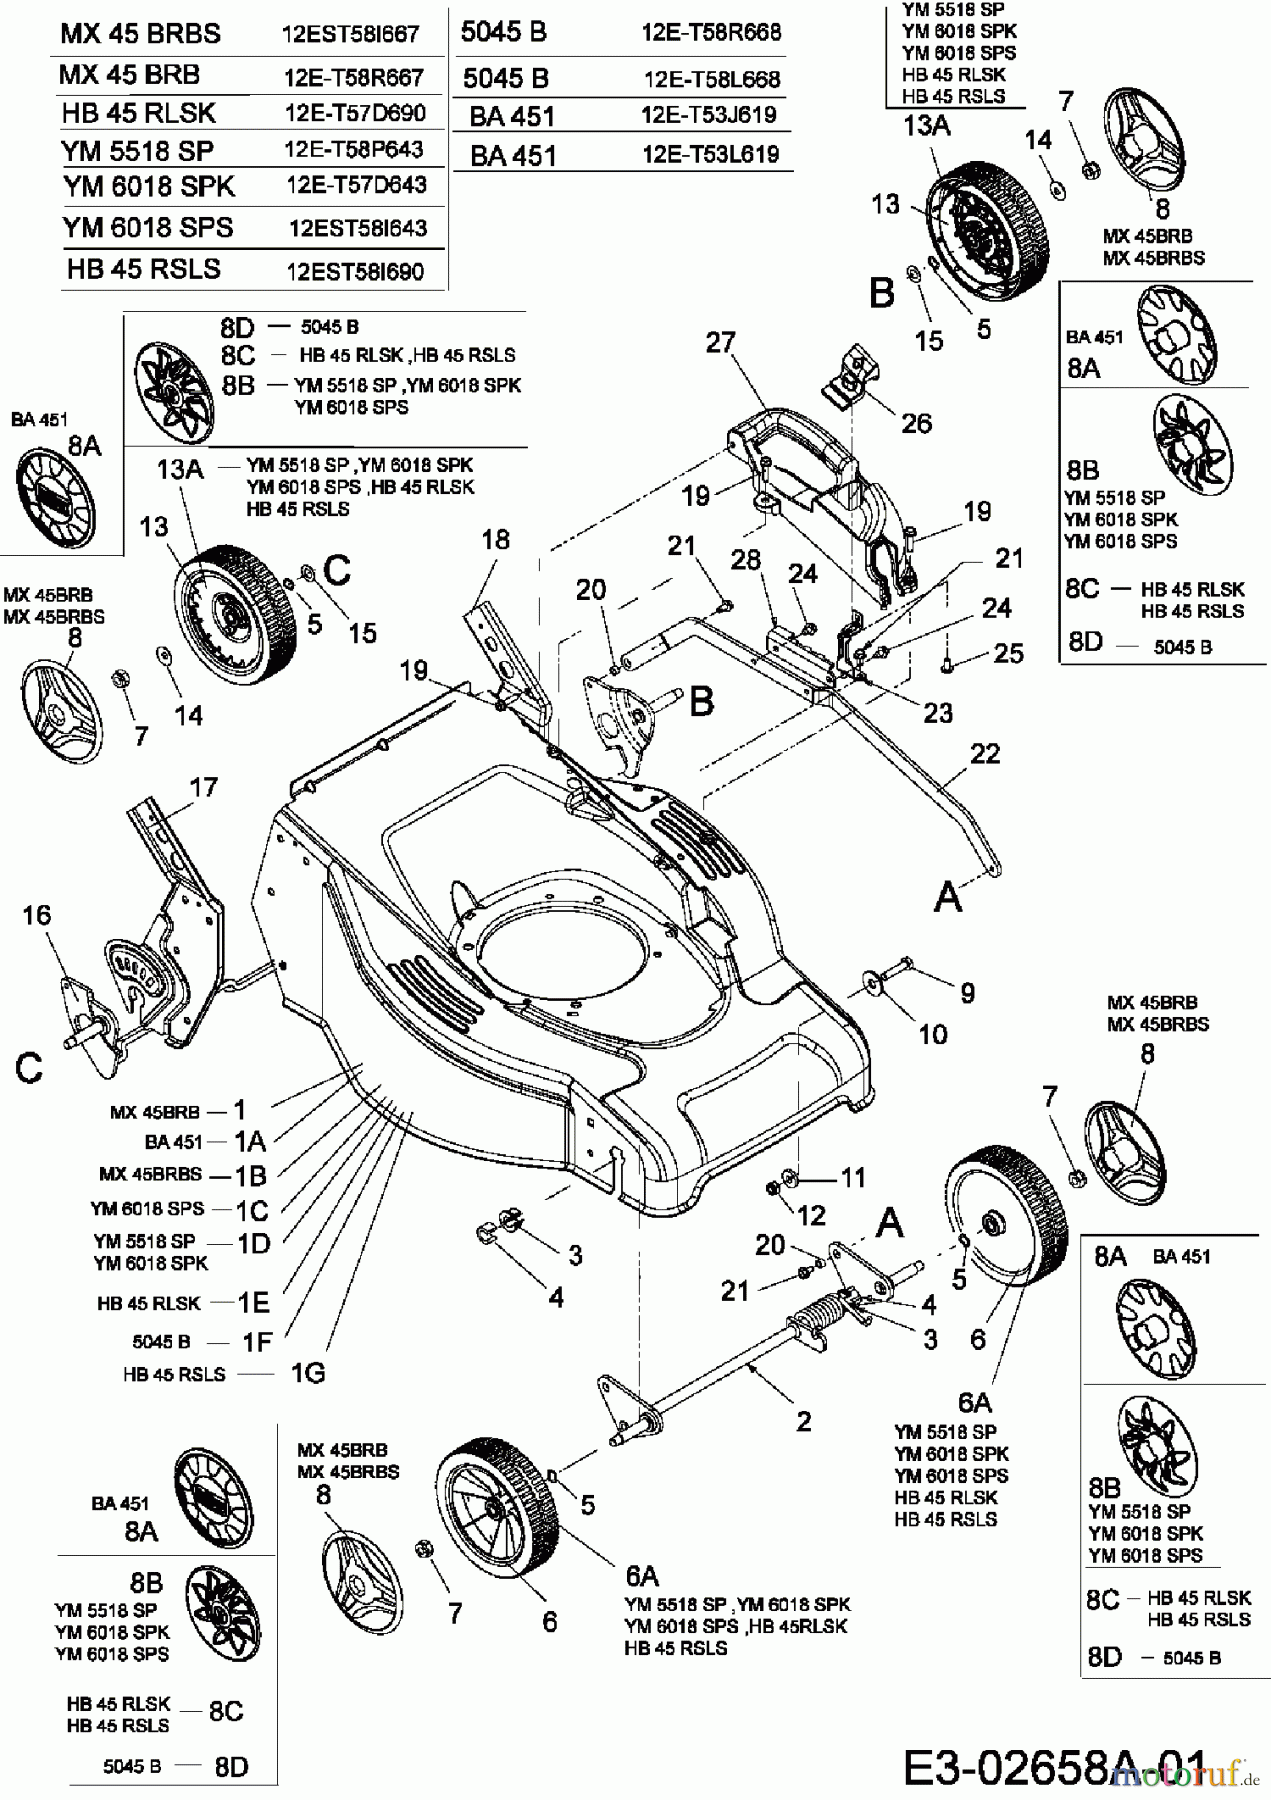  Merox Motormäher mit Antrieb MX 45 BRBS 12EST58I667  (2006) Räder, Schnitthöhenverstellung